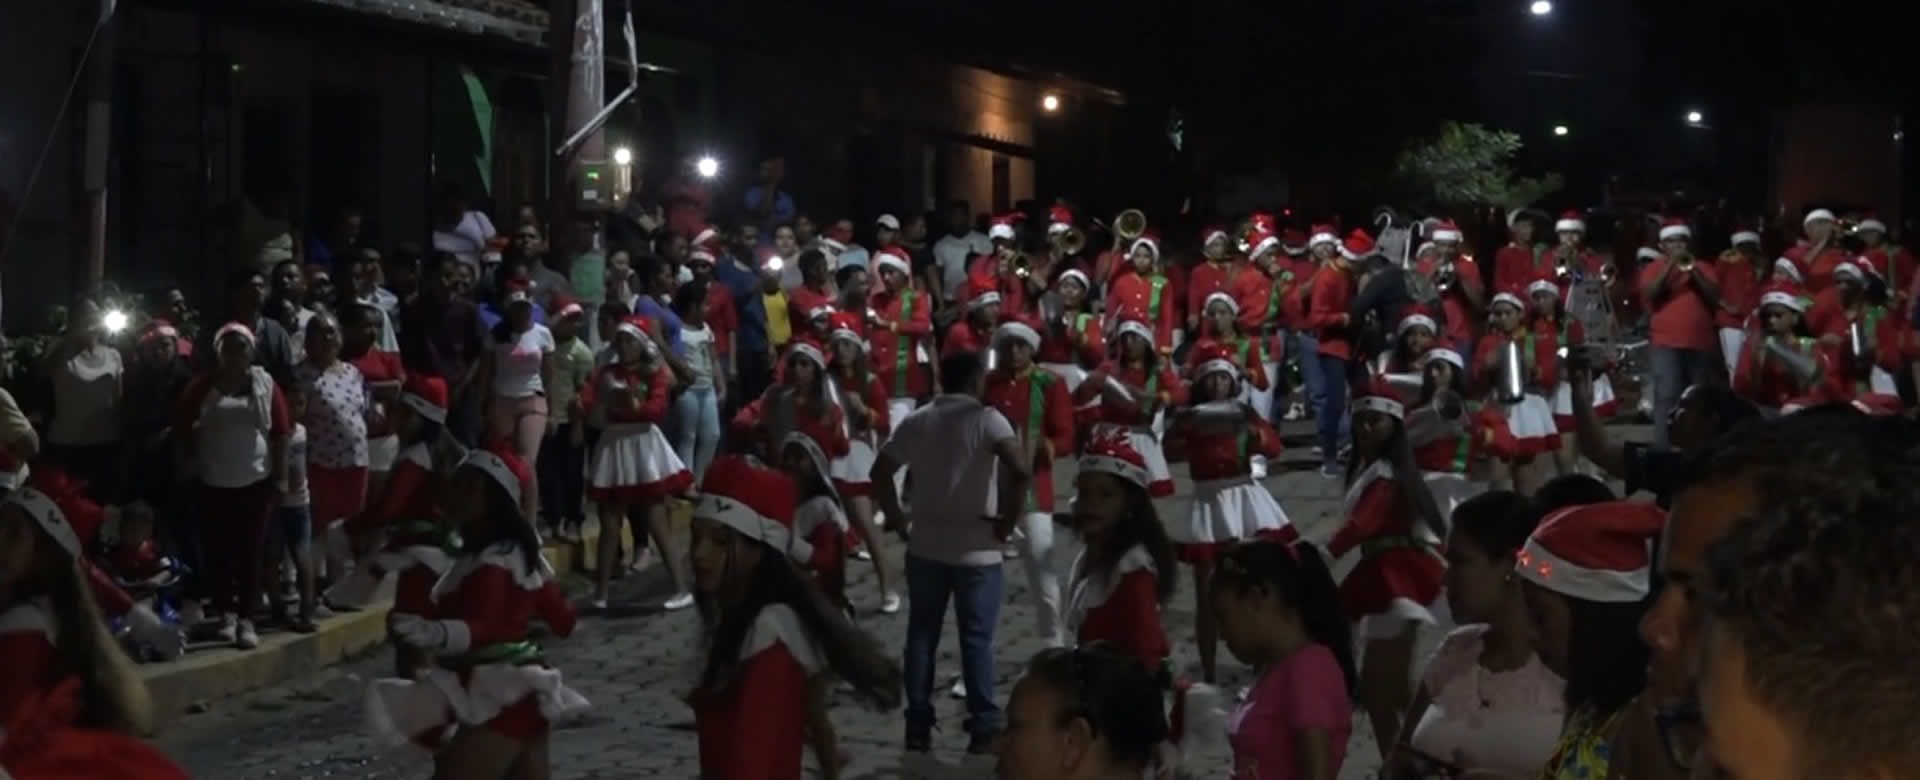 Familias disfrutan del Carnaval Navideño en Telica, León